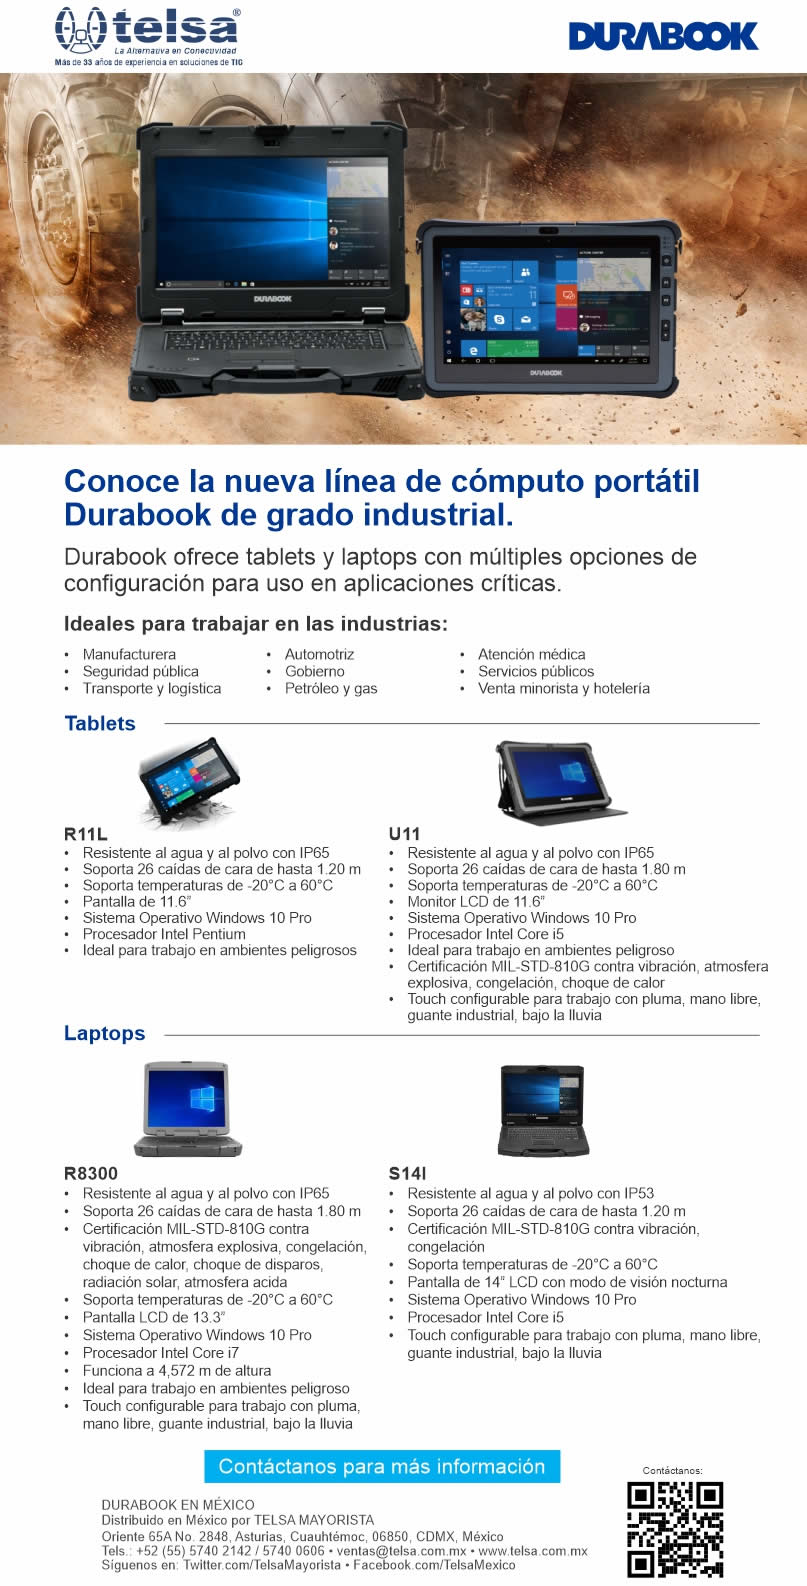 DURABOOK, conoce la nueva línea de cómputo portátil de grado industrial, ¡Contáctanos!